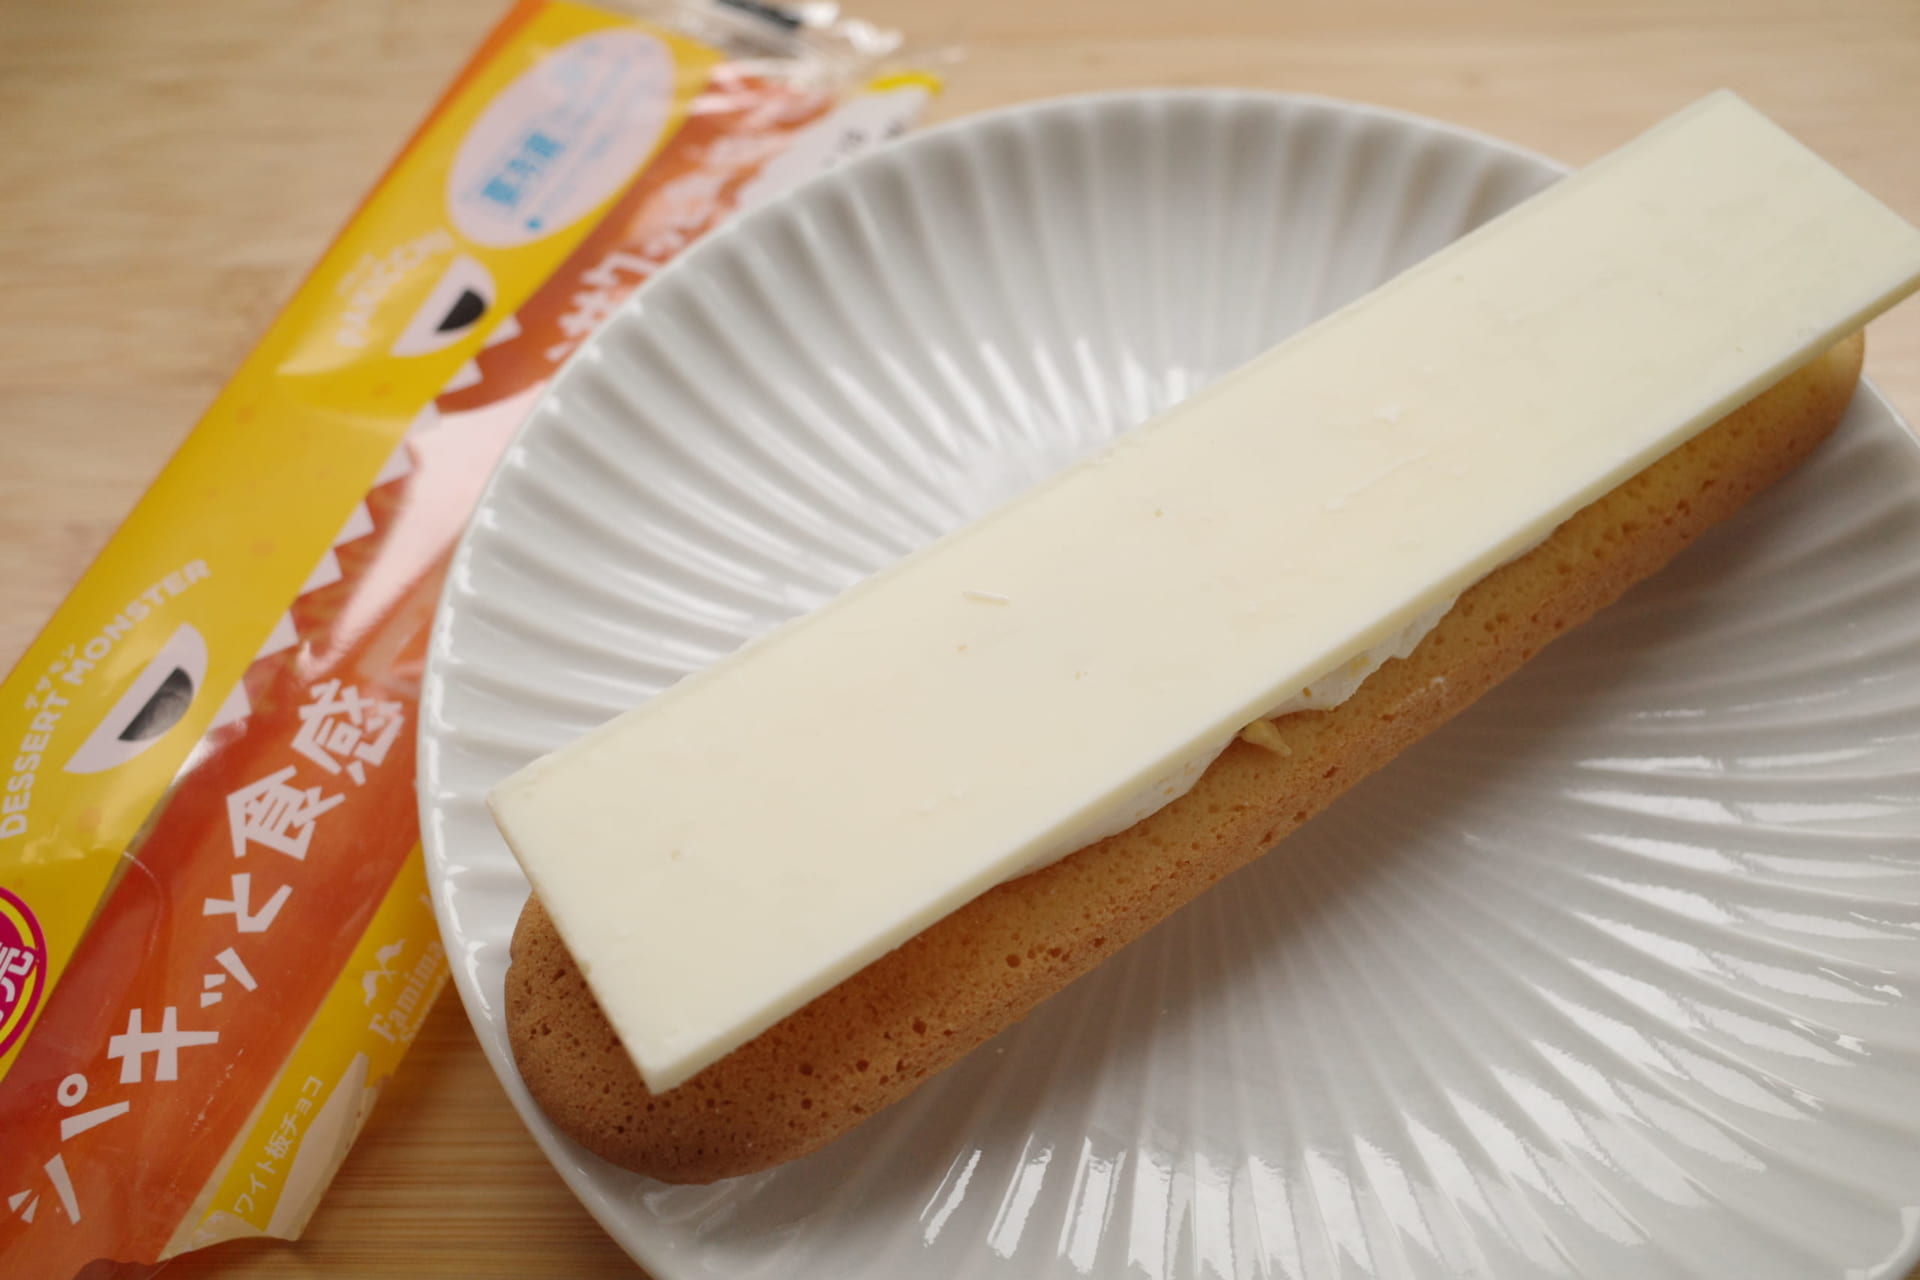 ファミリーマート新商品ルポ 板チョコのインパクトが抜群 パキチョコ ラングドシャサンド チーズ イエモネ